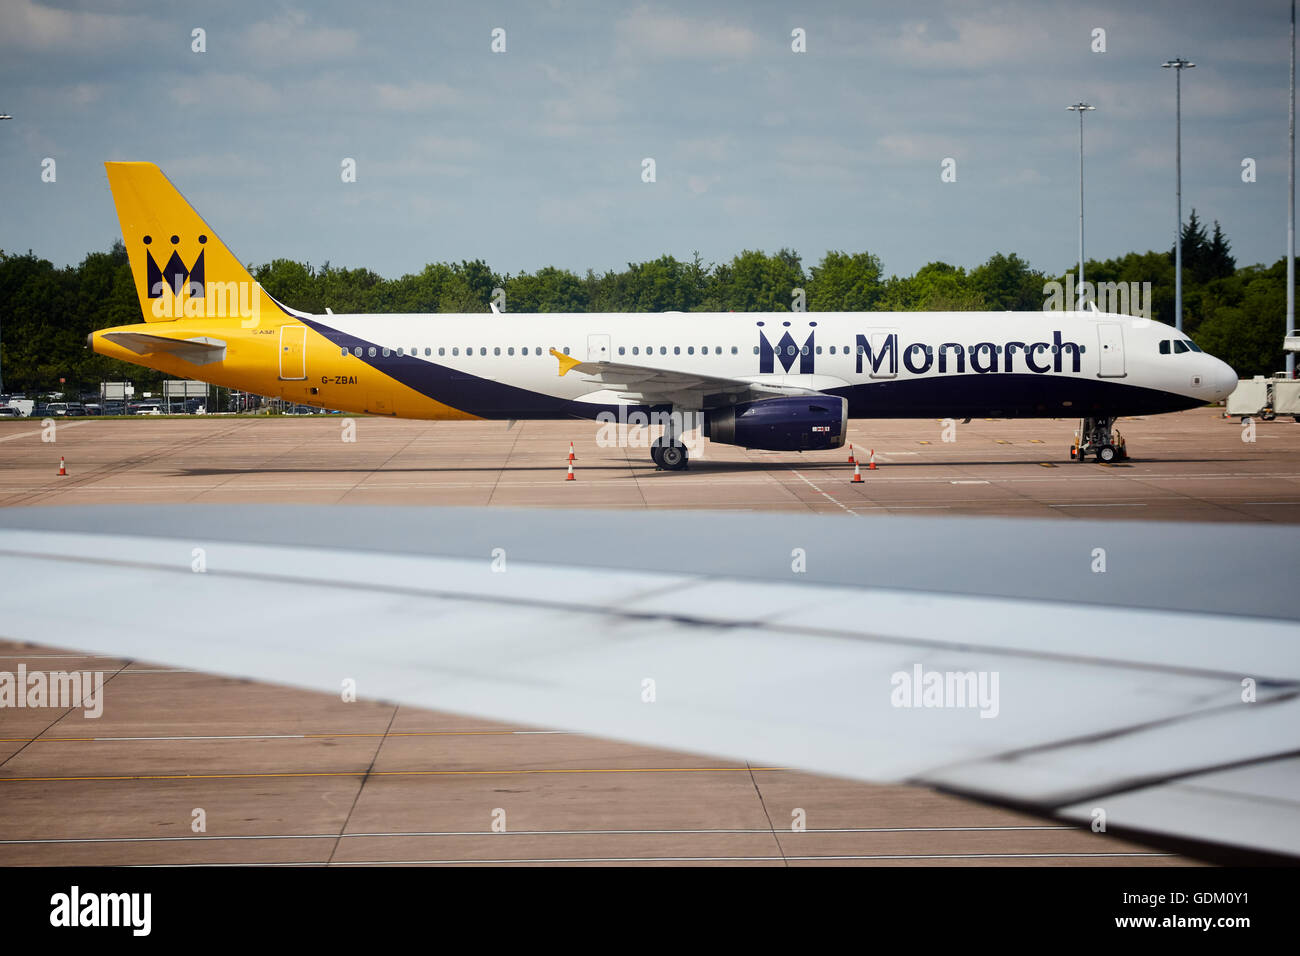 L'aéroport de Manchester Monarch livery airplane G-ZBAL était stationné sur le tarmac Banque D'Images